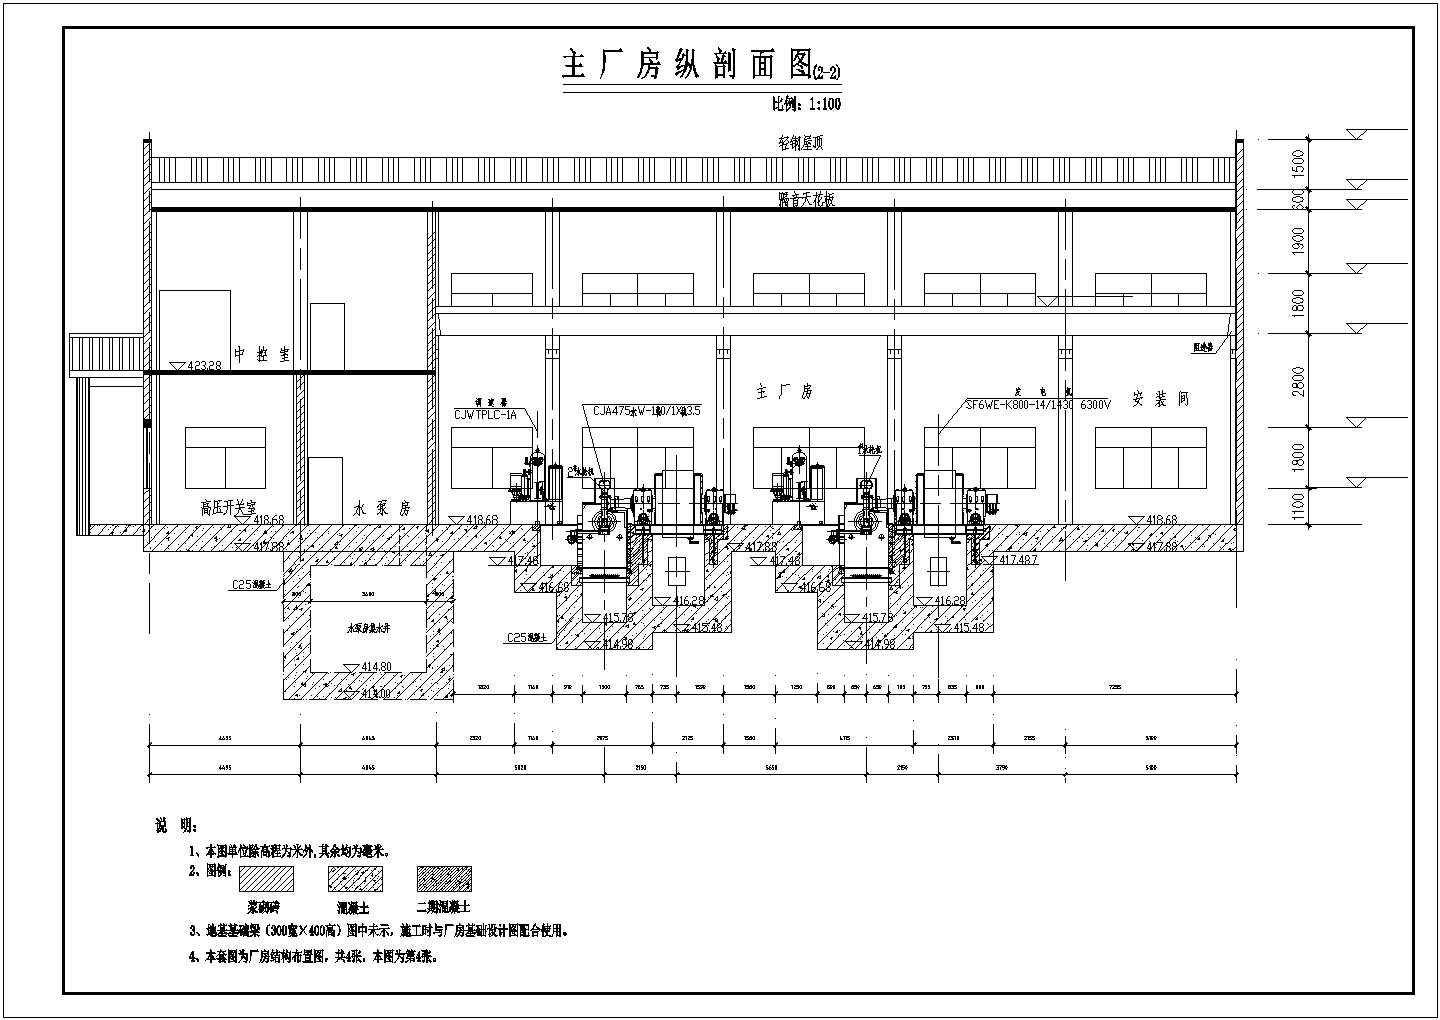 魏家湾水电站发电厂房开挖及结构钢筋图